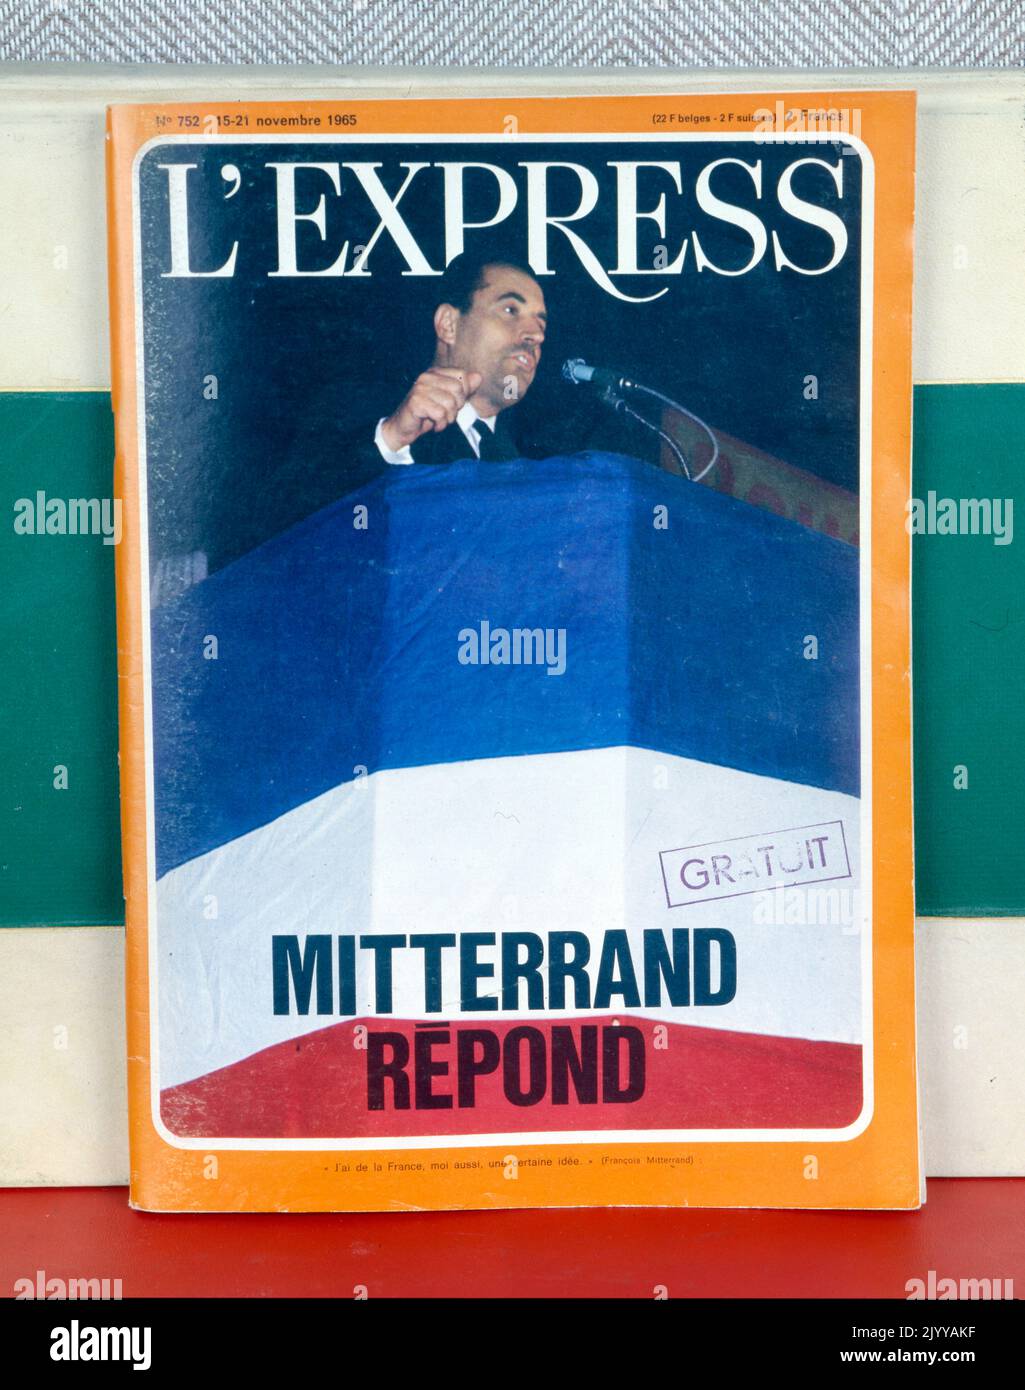 Farbige Fotografie eines Mannes auf einer Kanzel aus der Publikation 'L'Express'. Es trägt den Titel „Mitterrand antwortet“, datiert vom 15-21. November 1965. Stockfoto